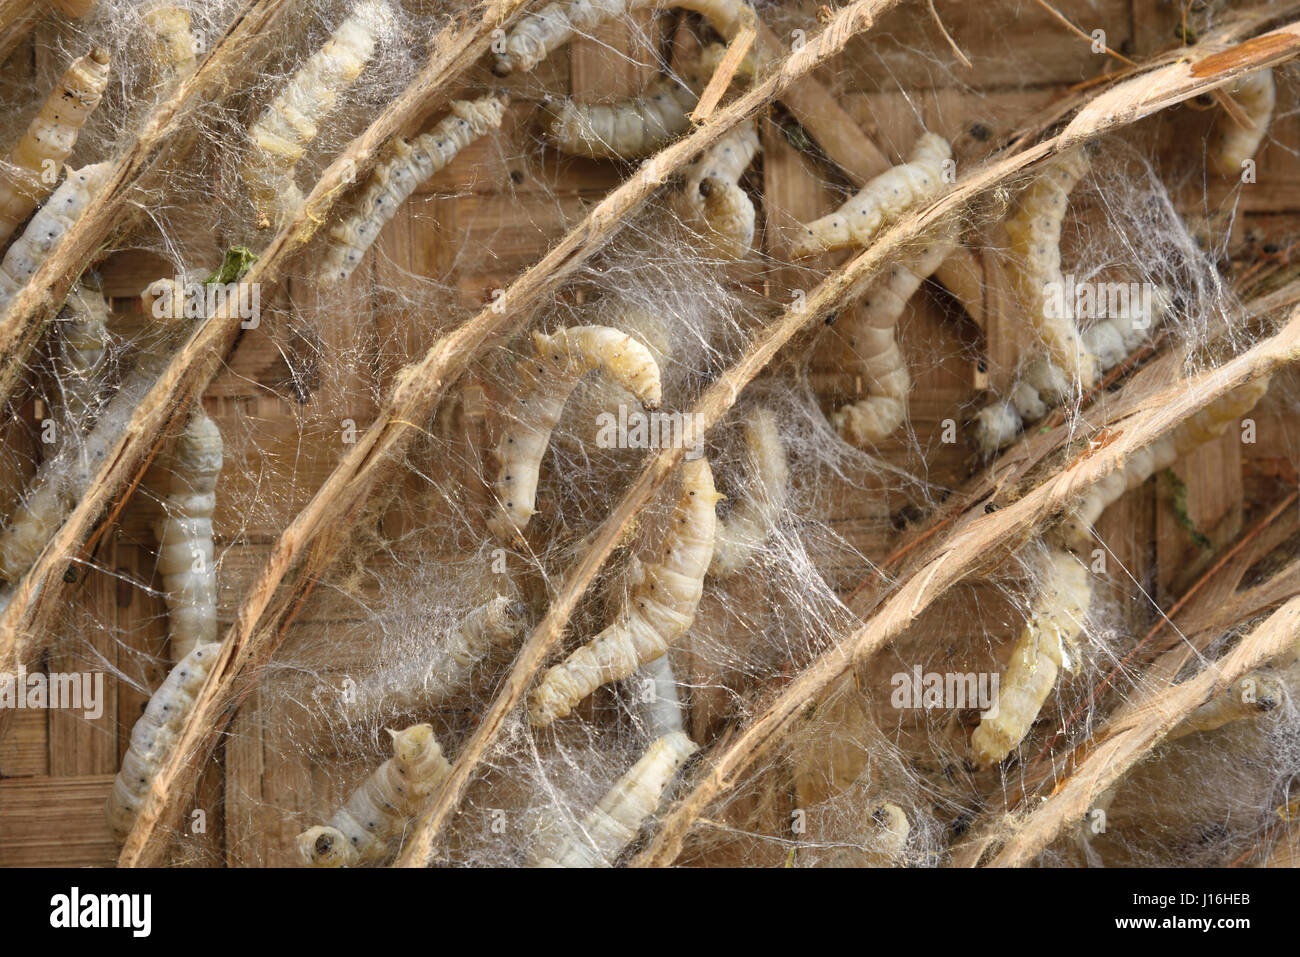 Seidenraupen-Kokons in traditionellen kreisförmigen Bambusrahmen bei der Herstellung von Seide in einem indischen Dorf. Murshidabad, West-Bengalen, Indien Stockfoto